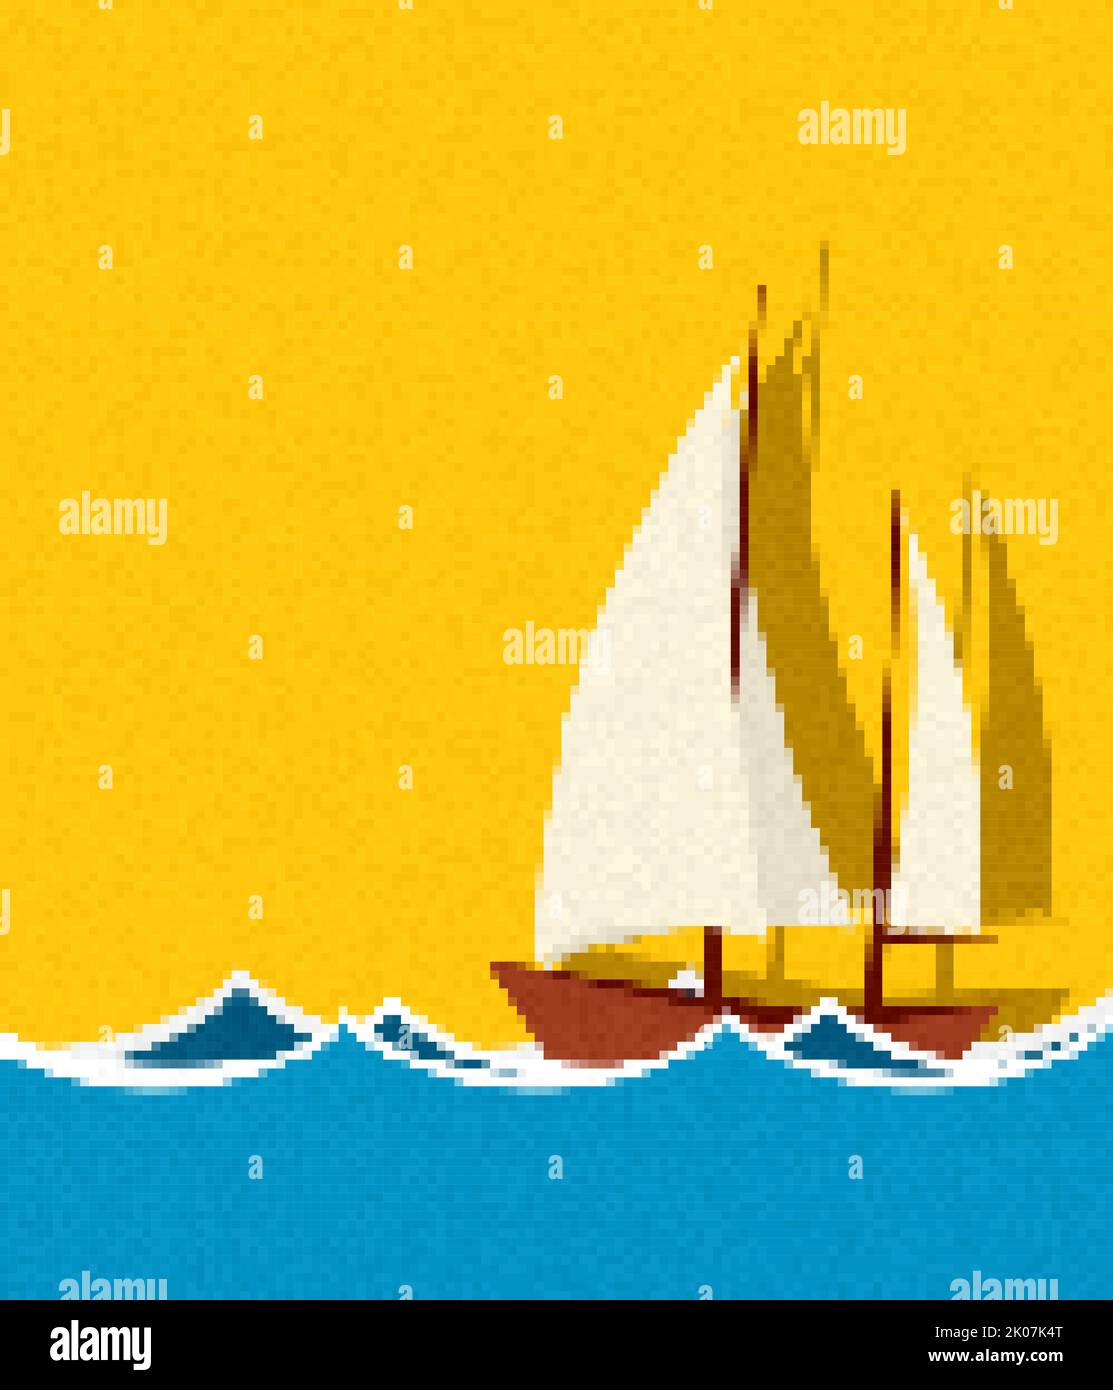 Nave a vela pixel art, illustrazione vettoriale Foto Stock